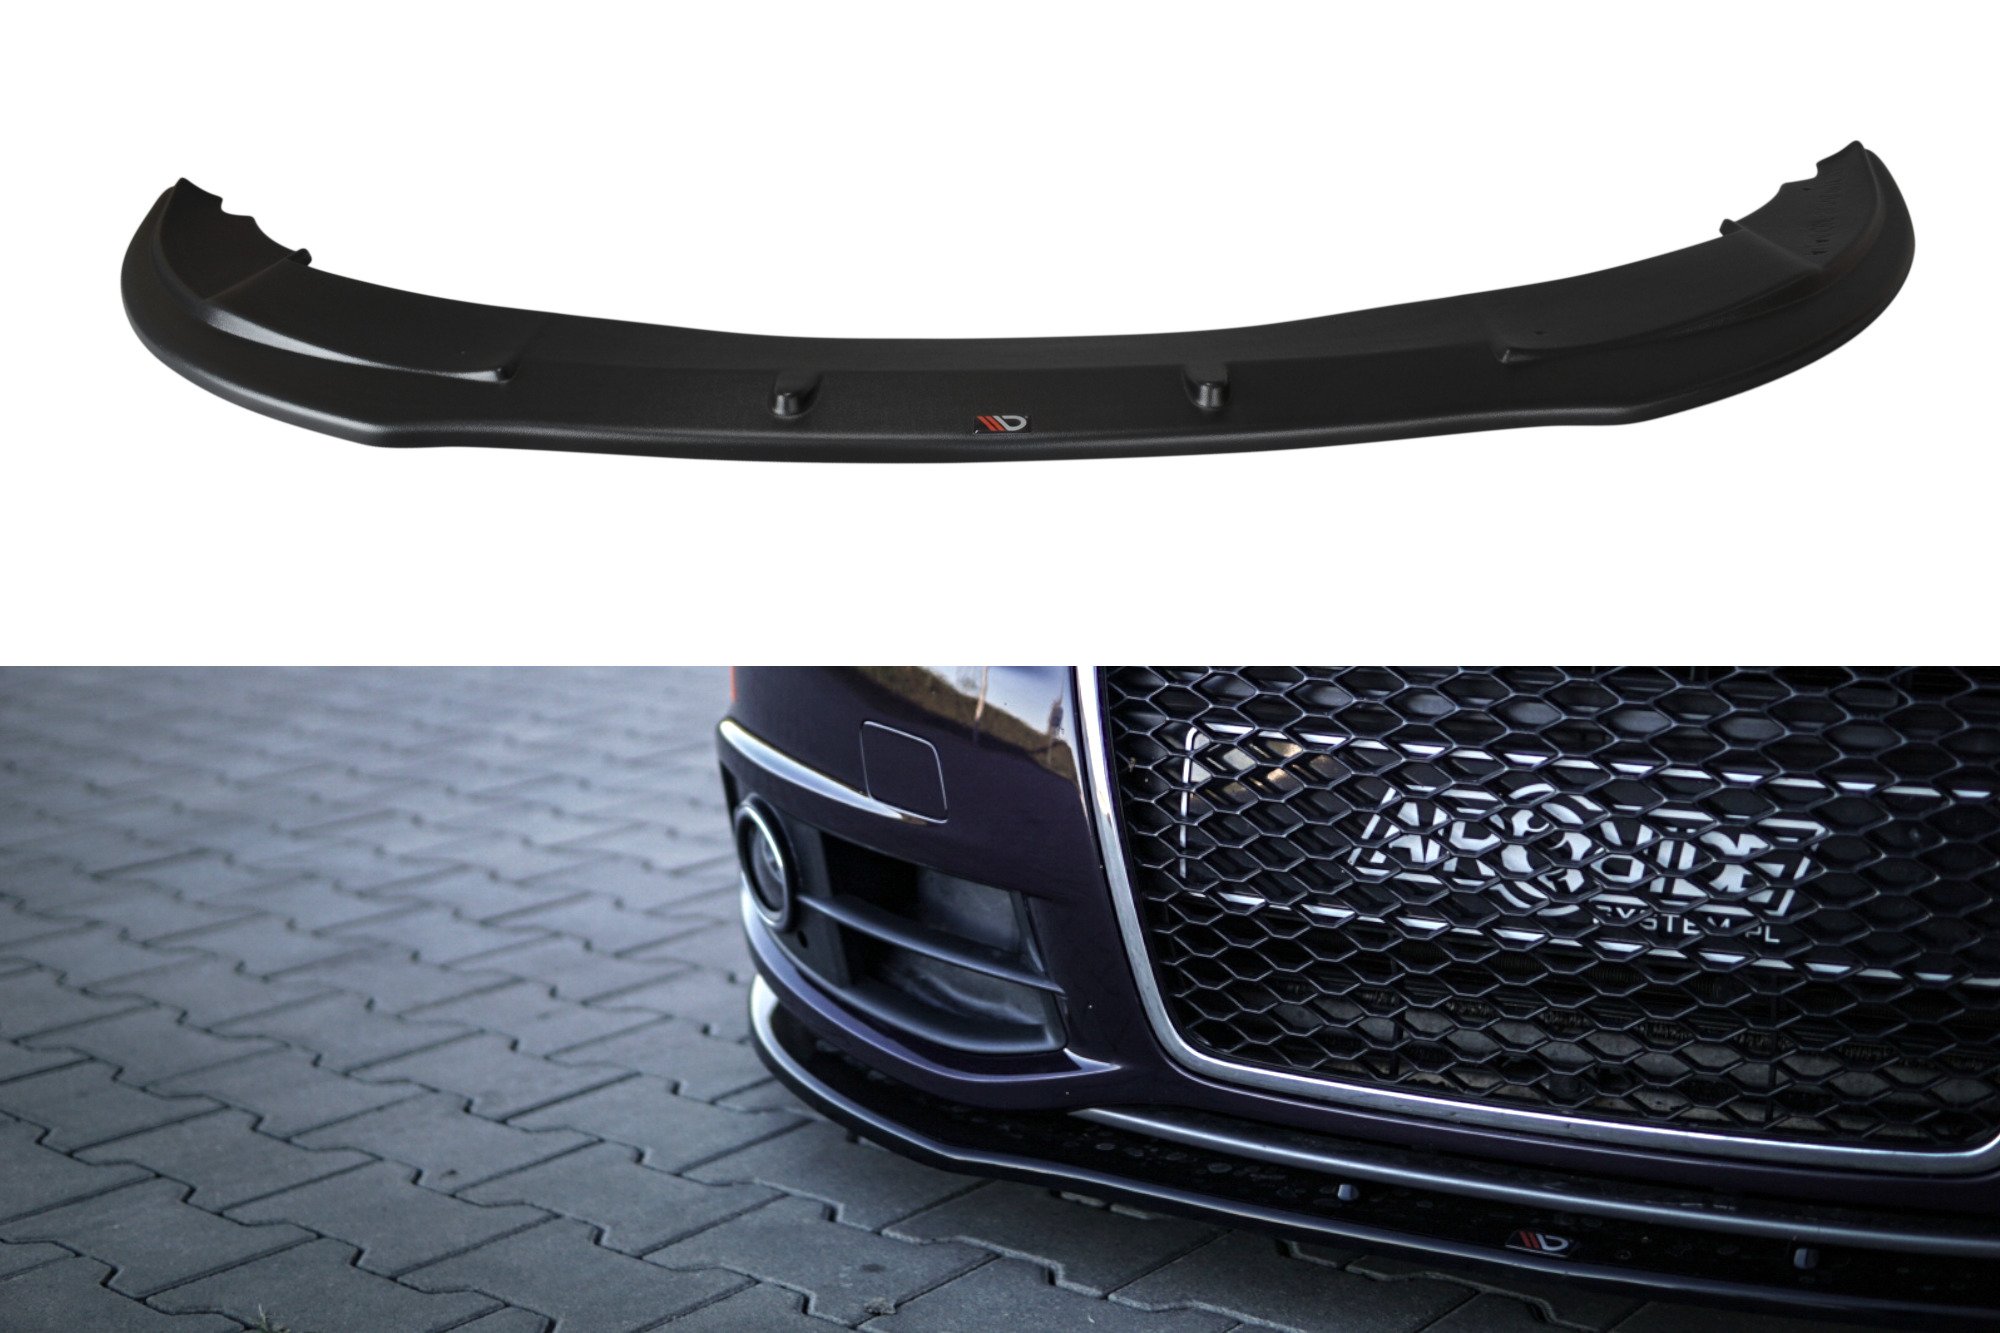 Maxton Design spoiler pod přední nárazník pro Audi A6 C6 FL, černý lesklý plast ABS